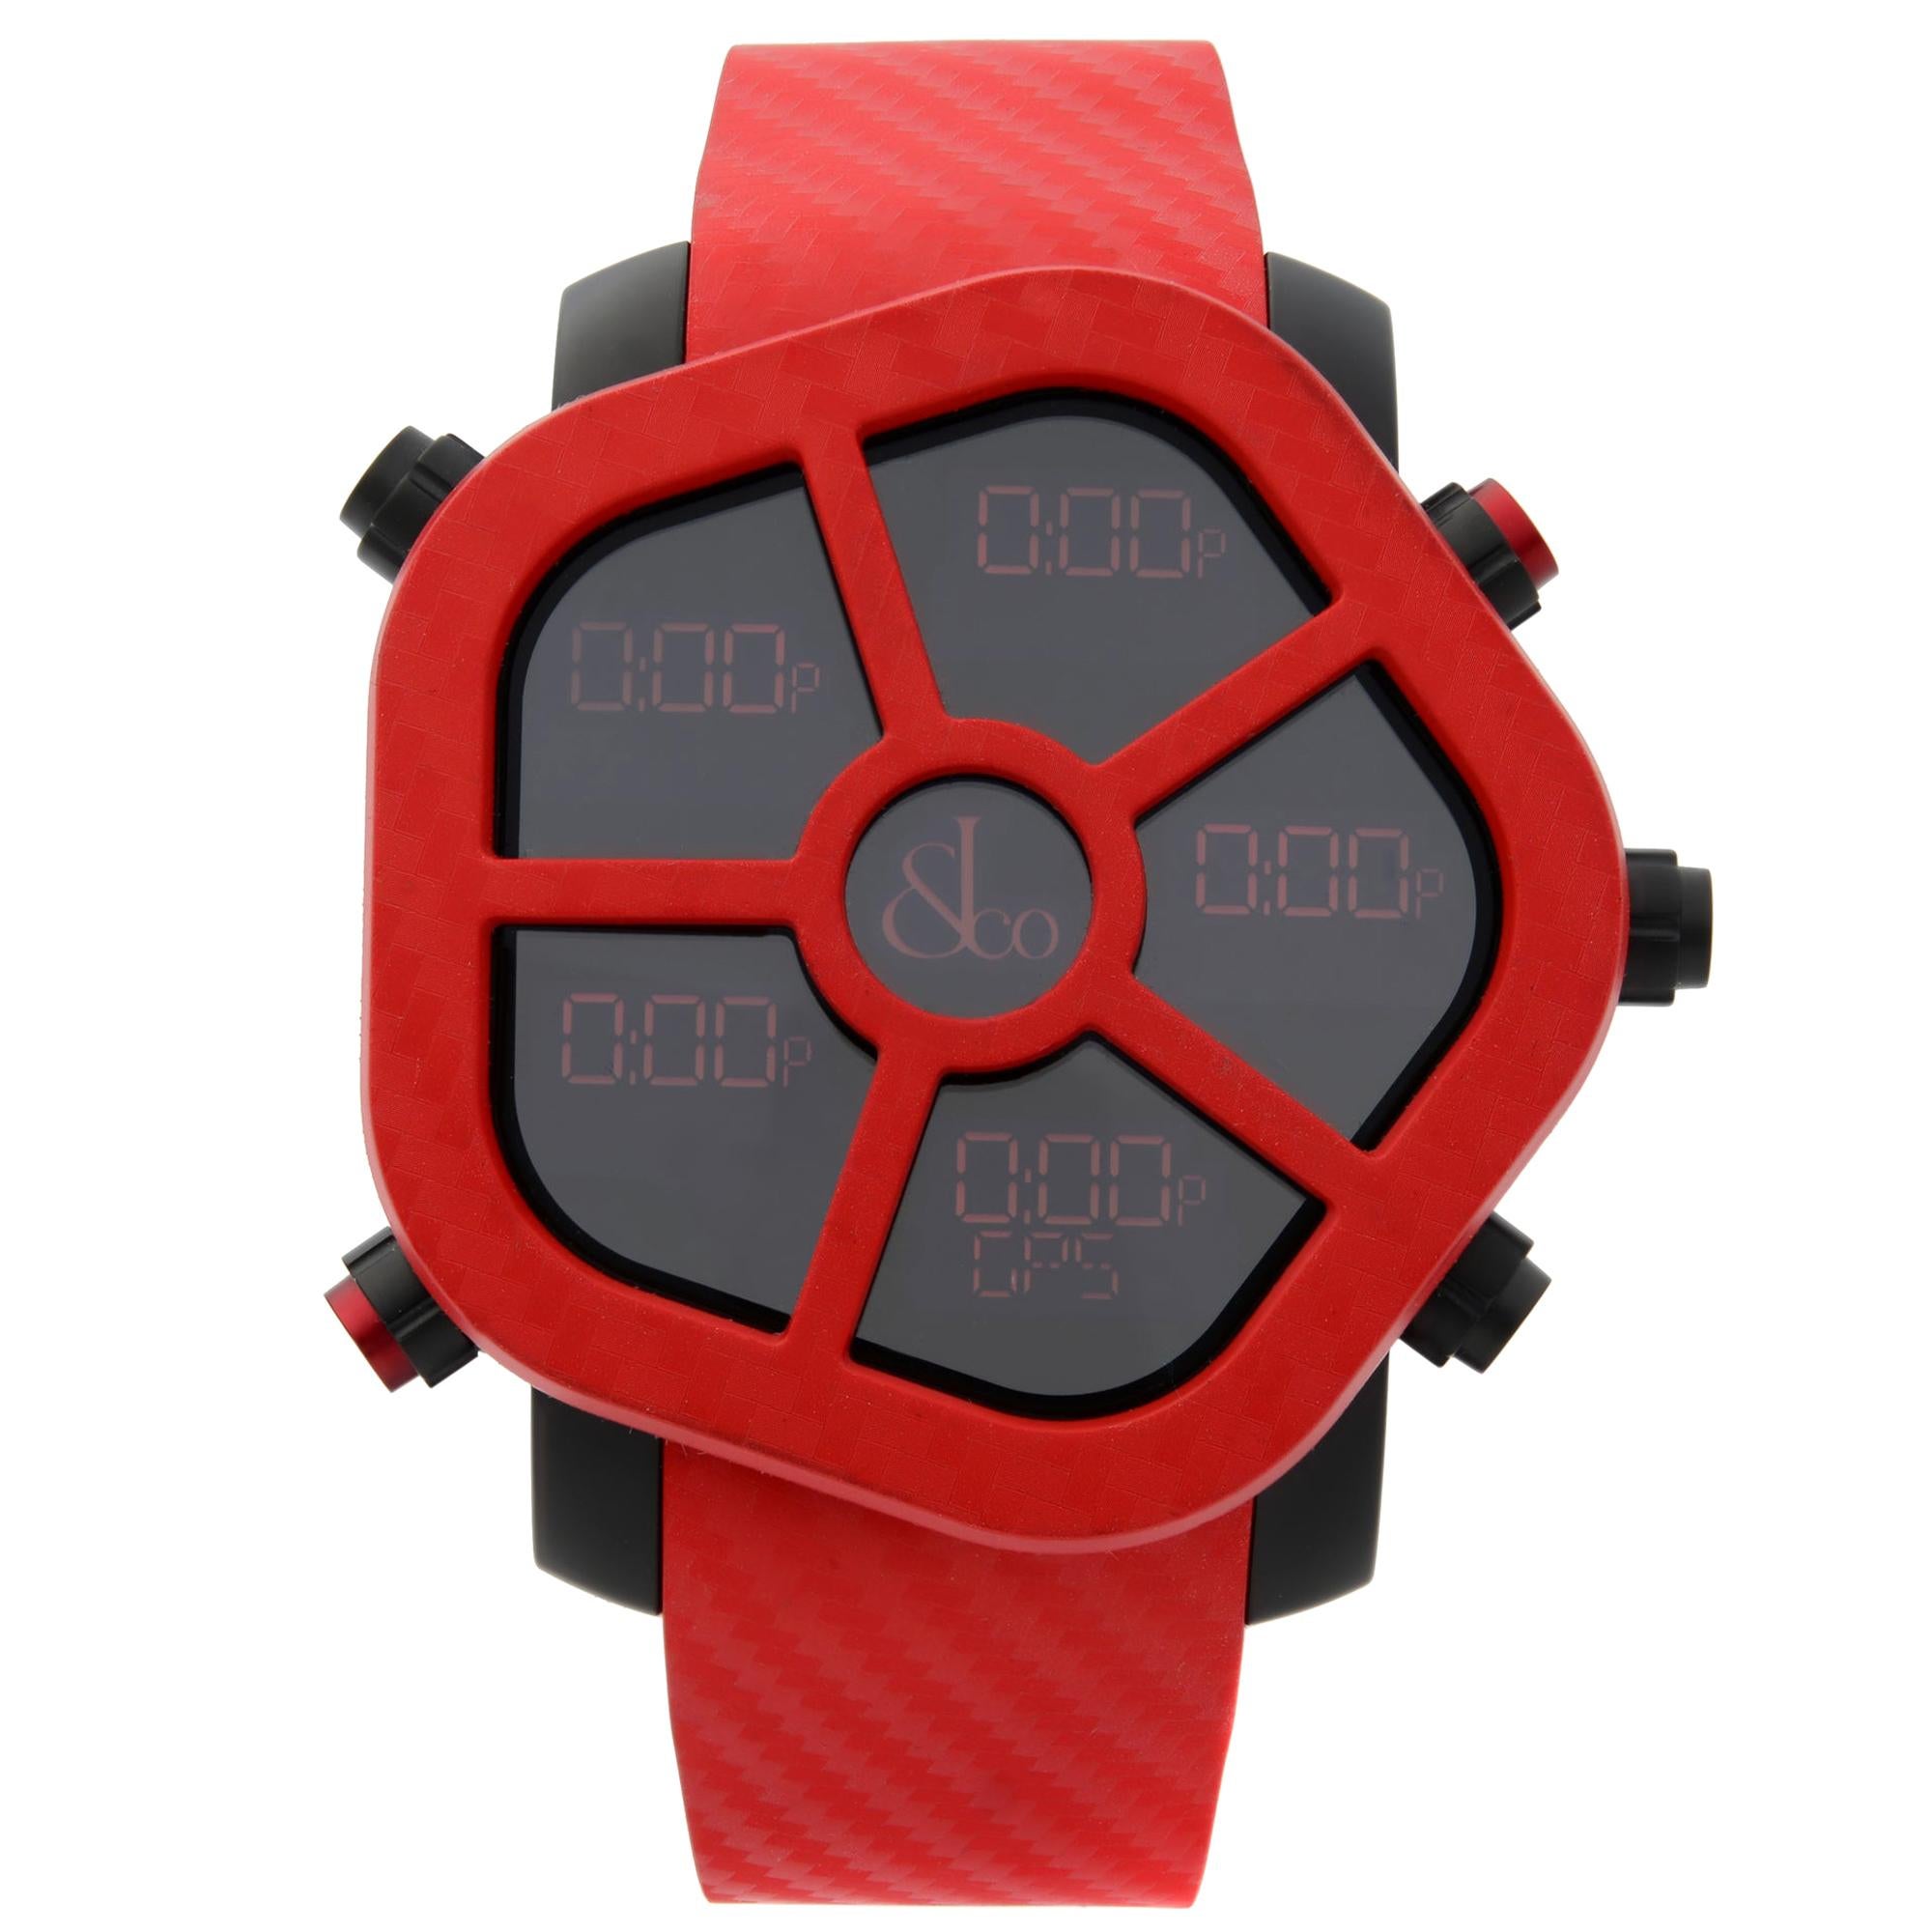 Jacob & Co. Ghost Carbon Bezel Red Quartz Men's Watch GH100.11.NS.PC.ANA4D